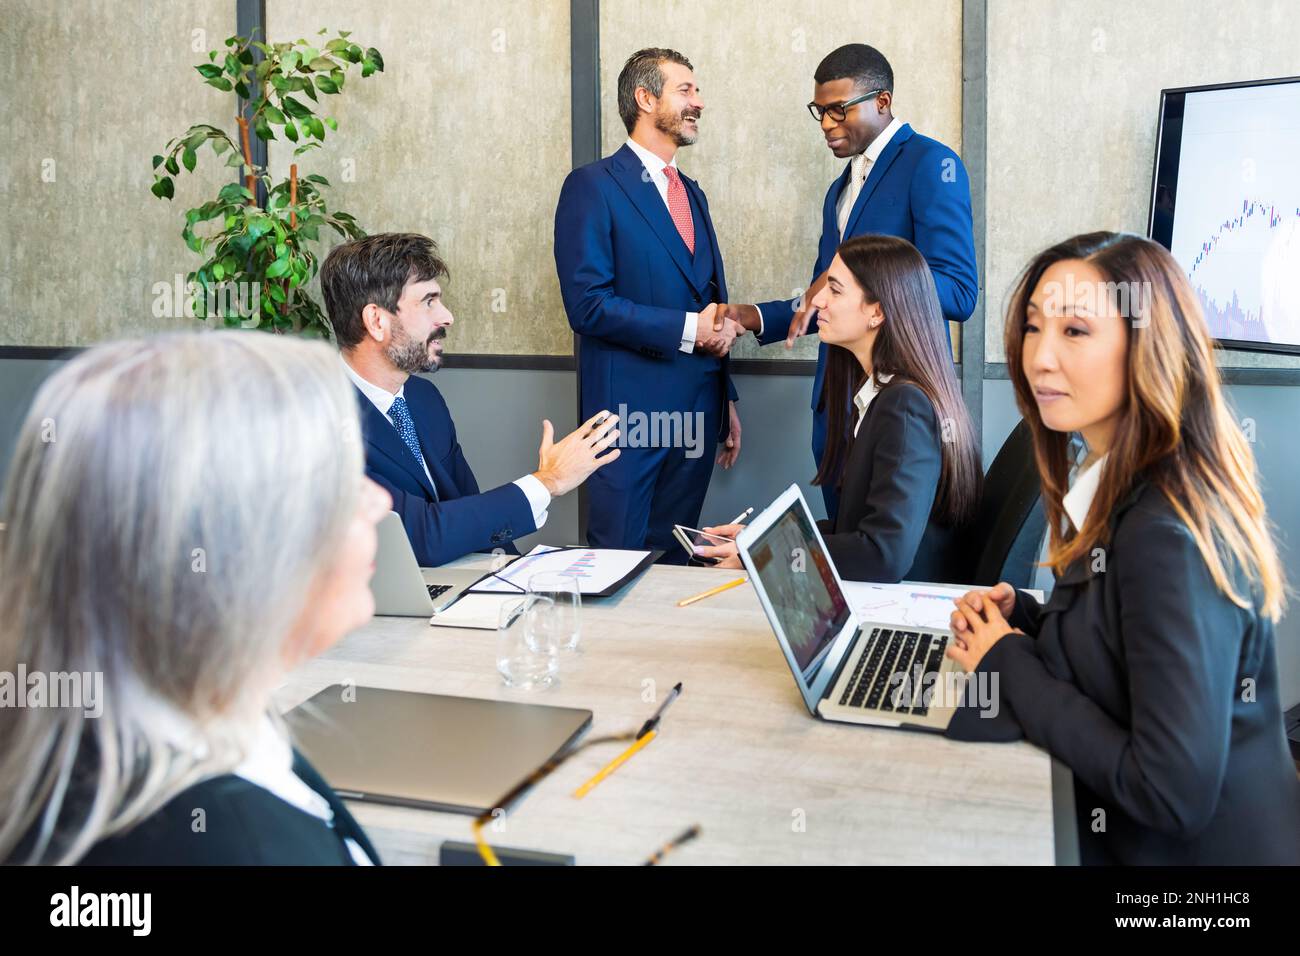 Grupo de colegas multiétnicos que se reúnen en la sala de juntas mientras el hombre negro da la mano con el colega y la mujer asiática que se sienta en la mesa con el talki del ordenador portátil Foto de stock